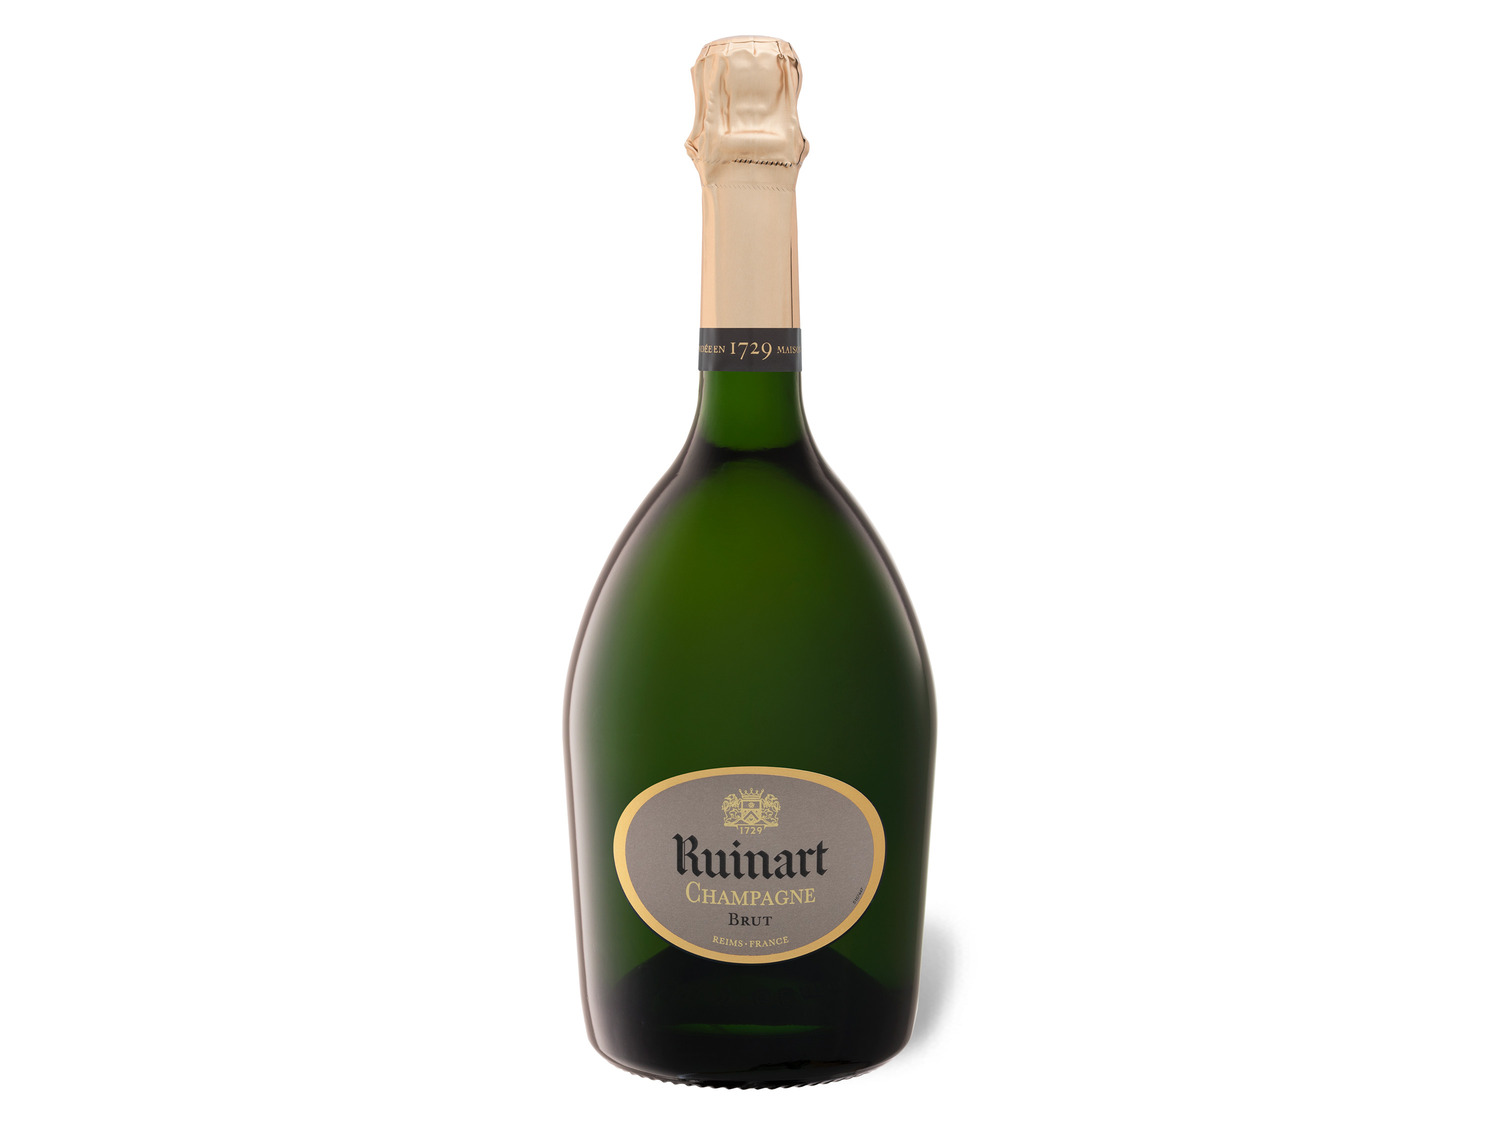 R de Ruinart Champagne brut, LIDL | Champagner